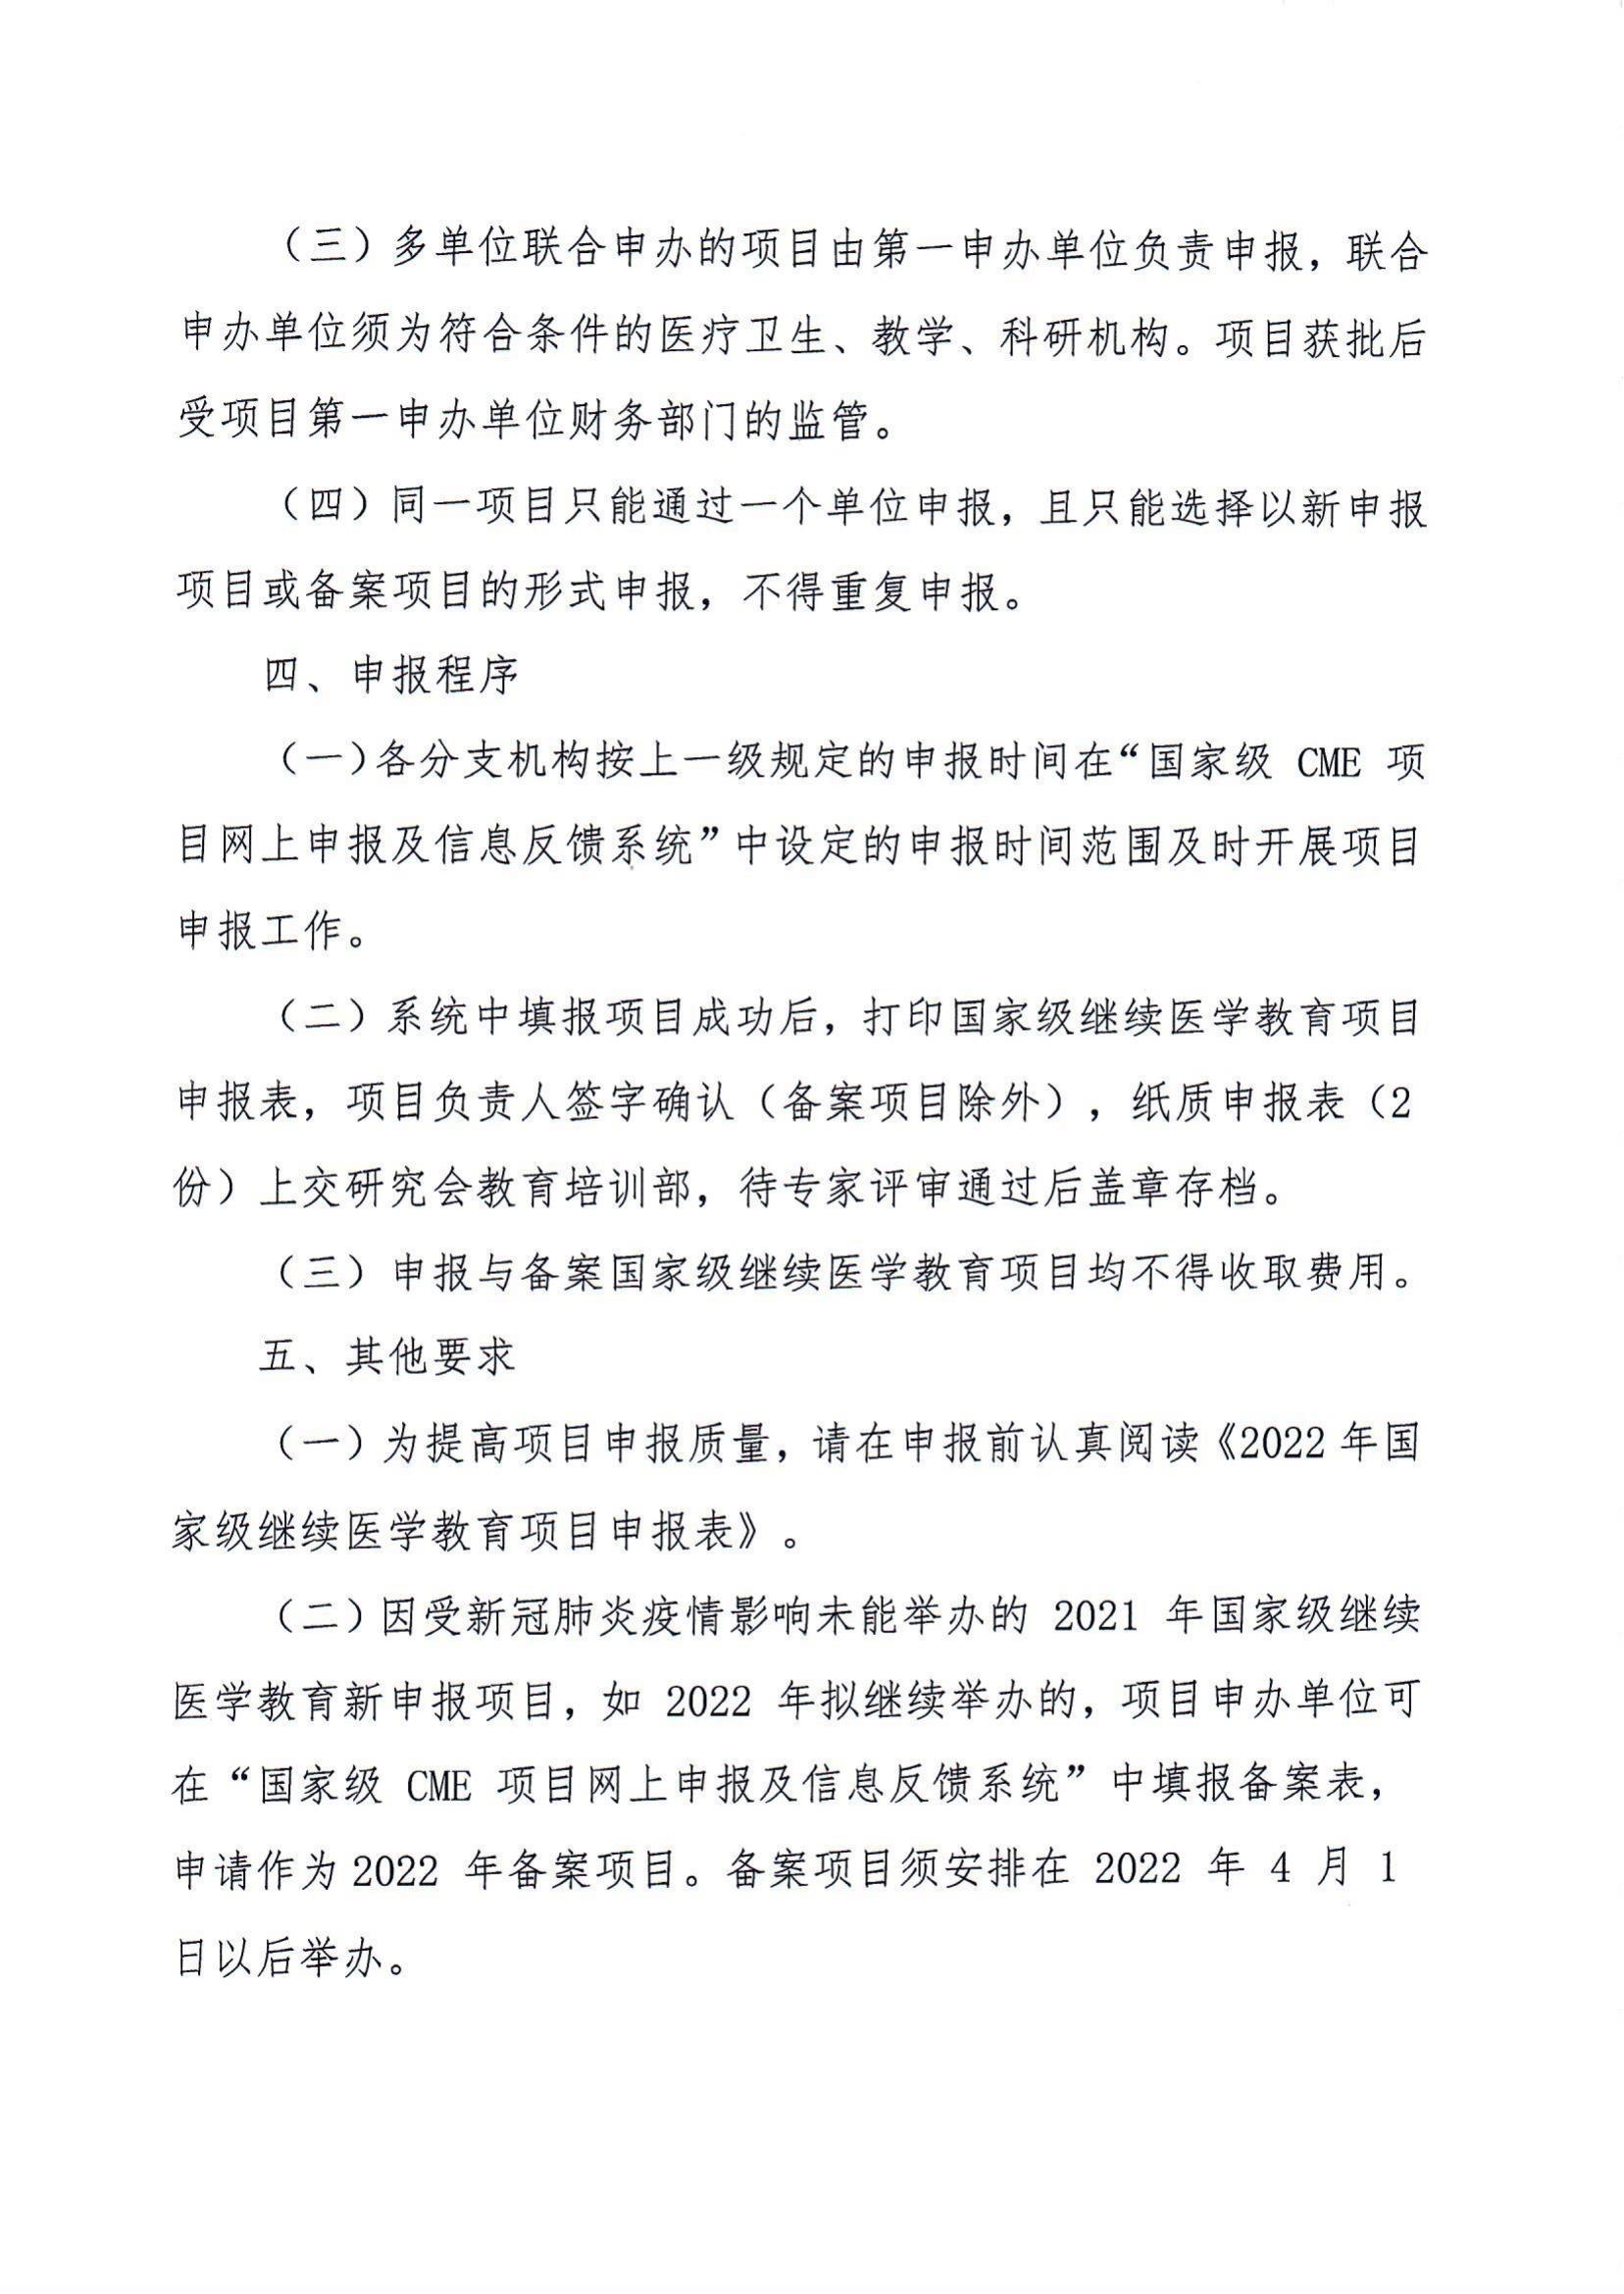 中国老年保健医学研究会申报2022年国家级继续医学教育项目的通知_01.jpg